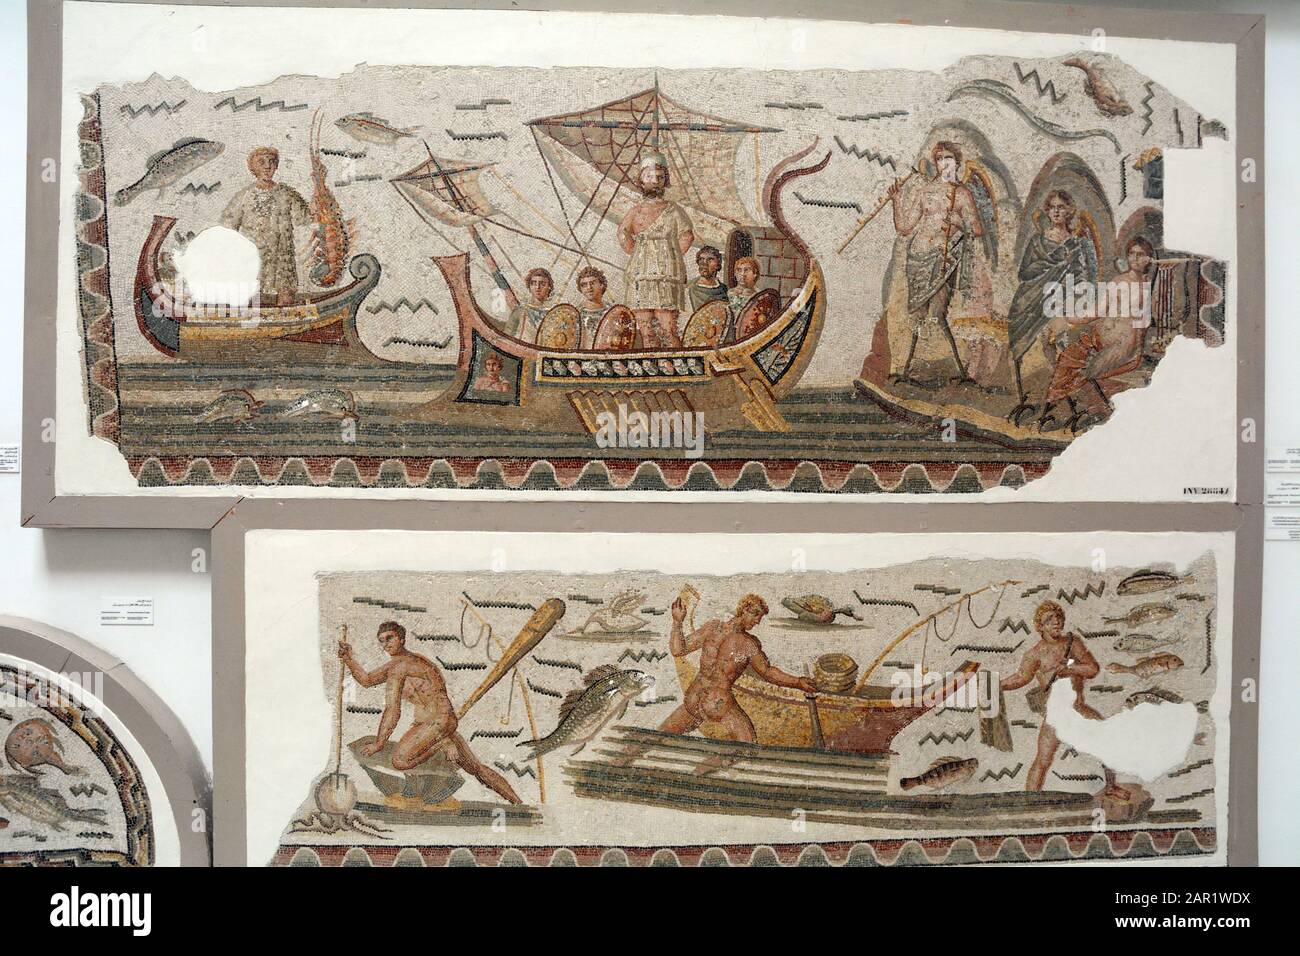 Ein altes römisches Mosaik aus dem 3. Jahrhundert nach Christus, das Ulysses und seine Mannschaft darstellt, die das Lied der Sirenen, das Bardo National Museum, Tunis, Tunis, in sich tragen. Stockfoto